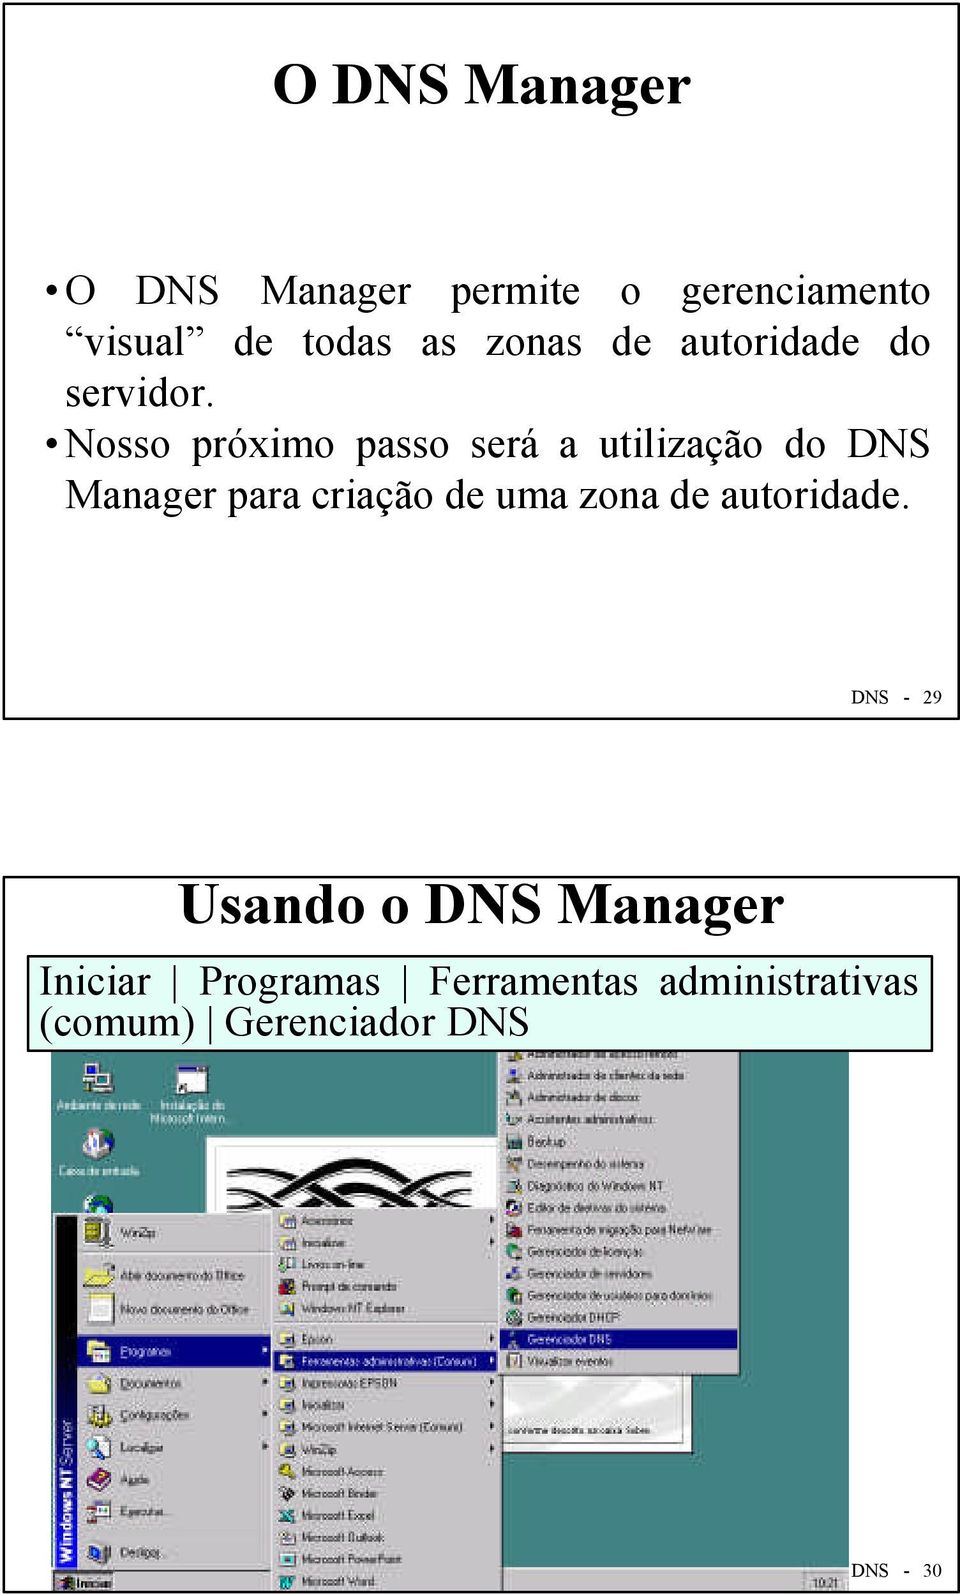 Nosso próximo passo será a utilização do DNS Manager para criação de uma